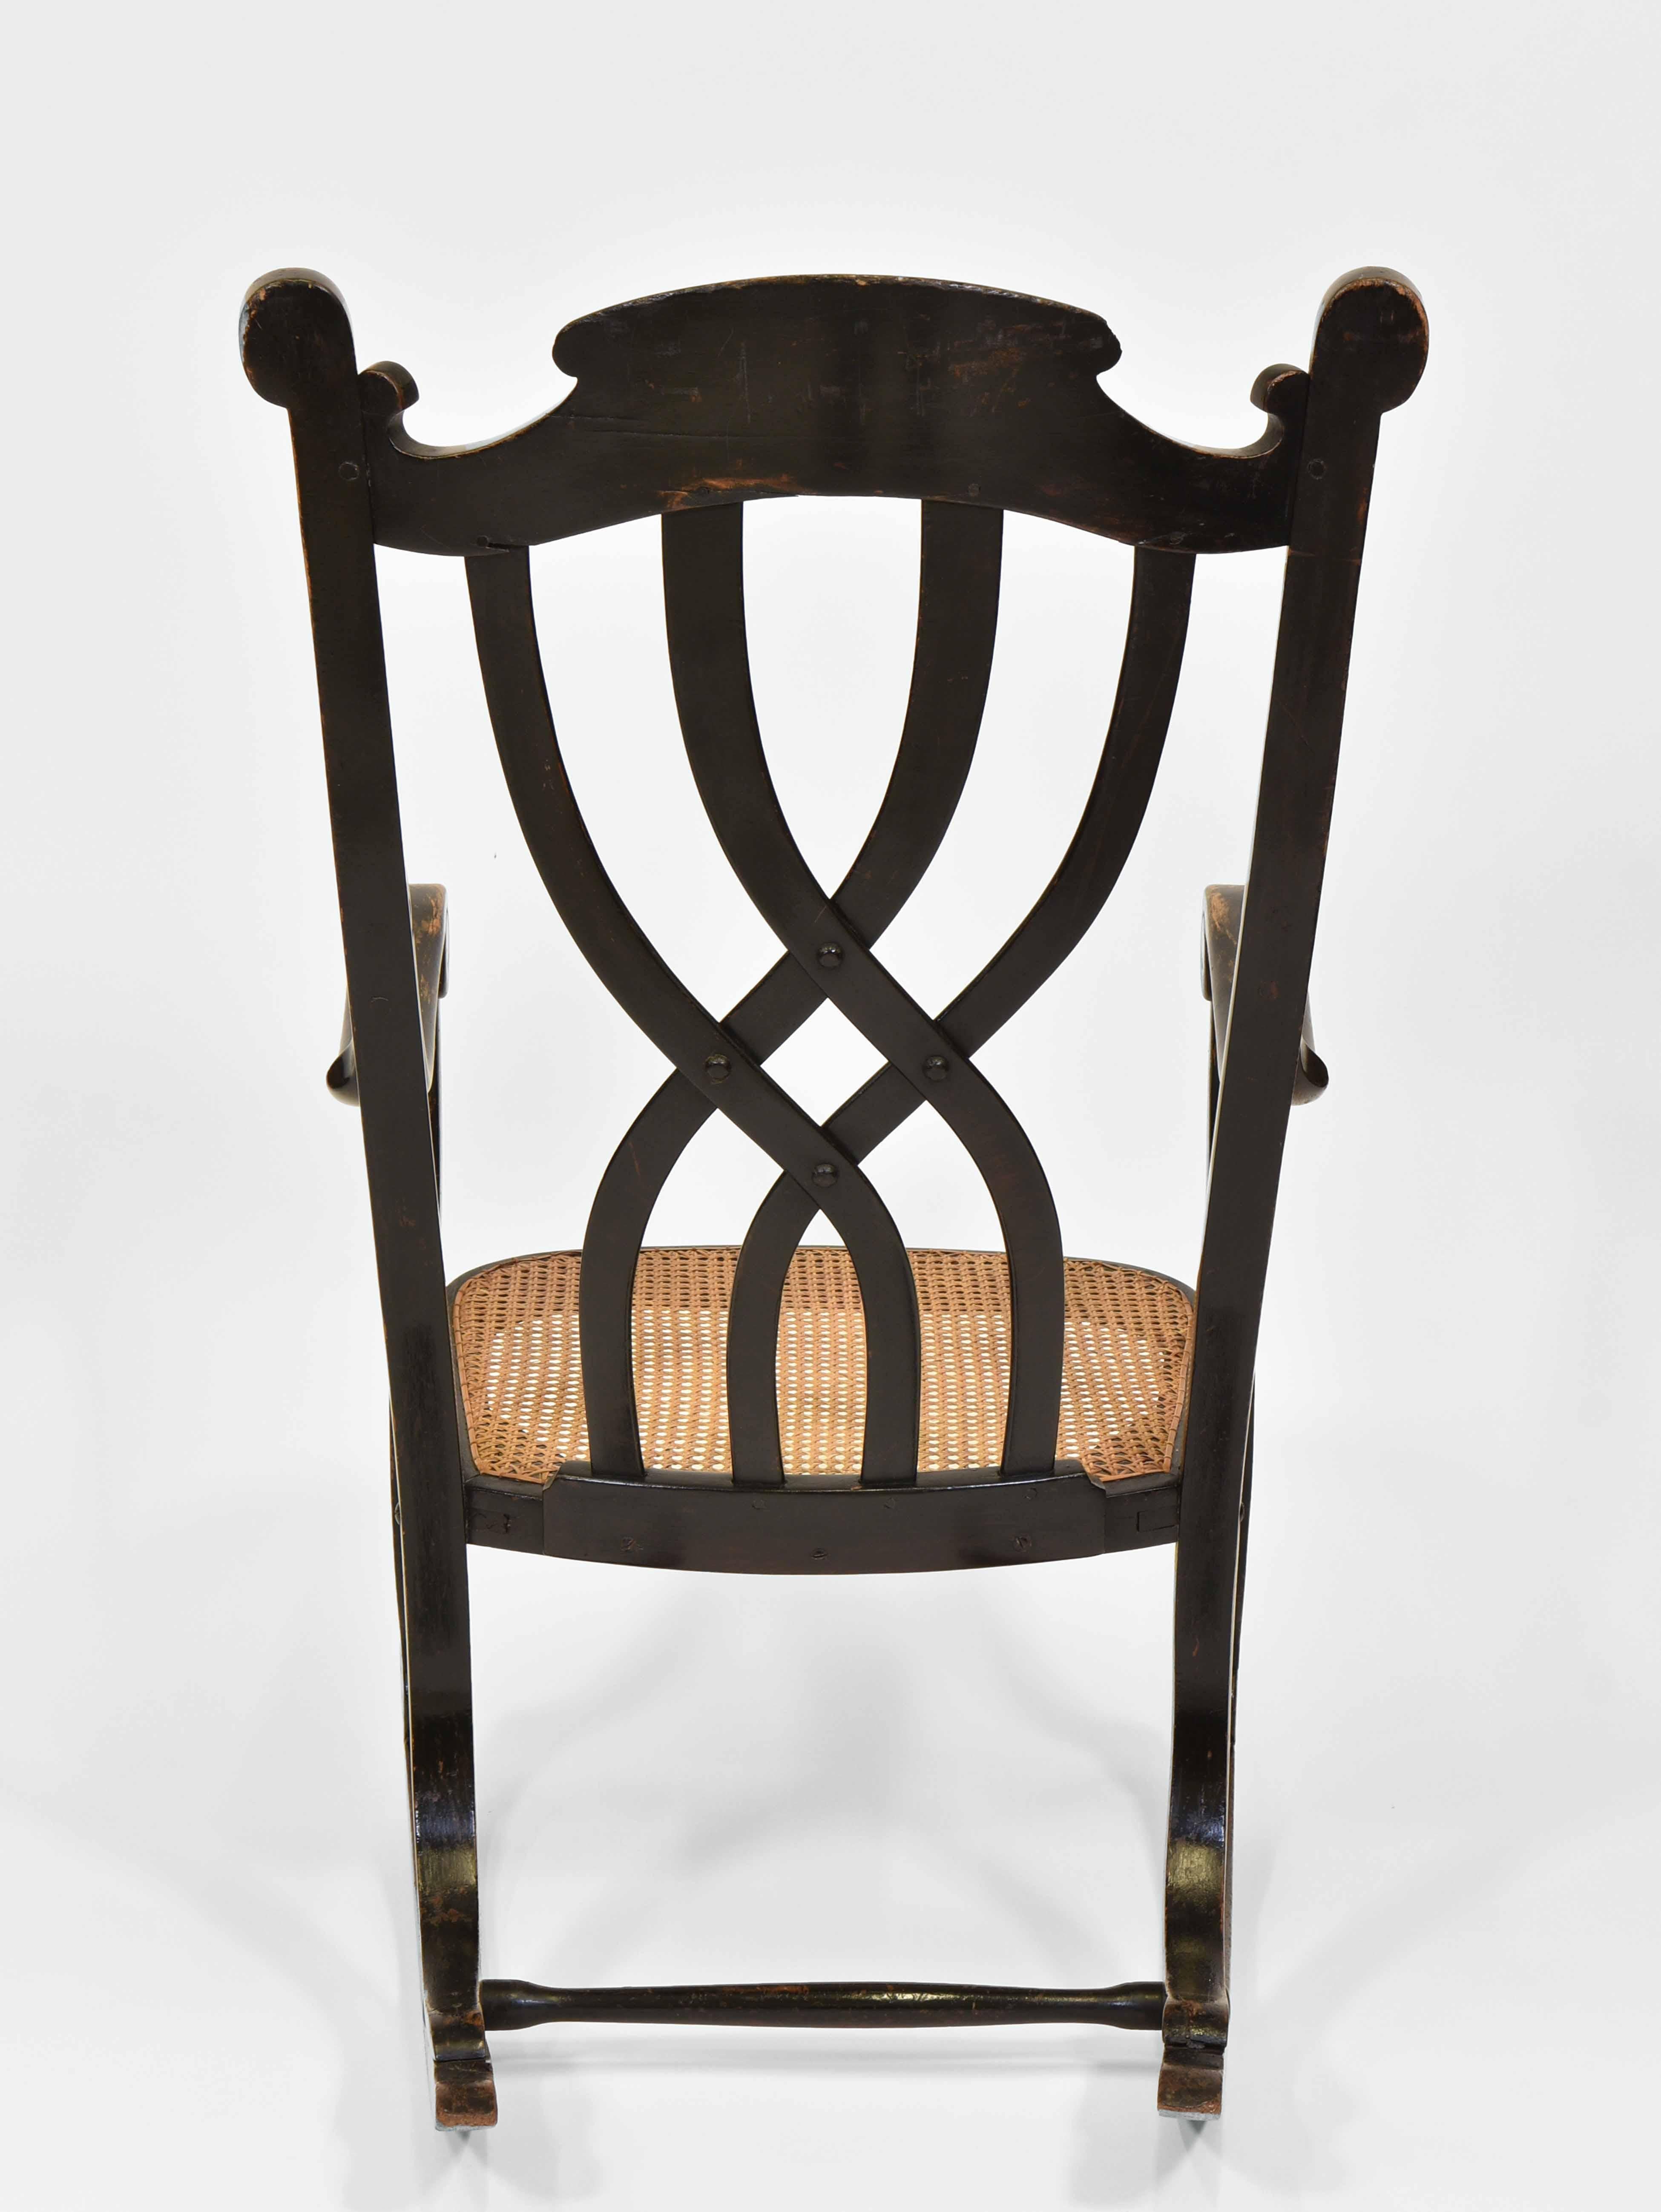 Rare Antique Thonet Art Nouveau Swing Rocking Chair 7401 2